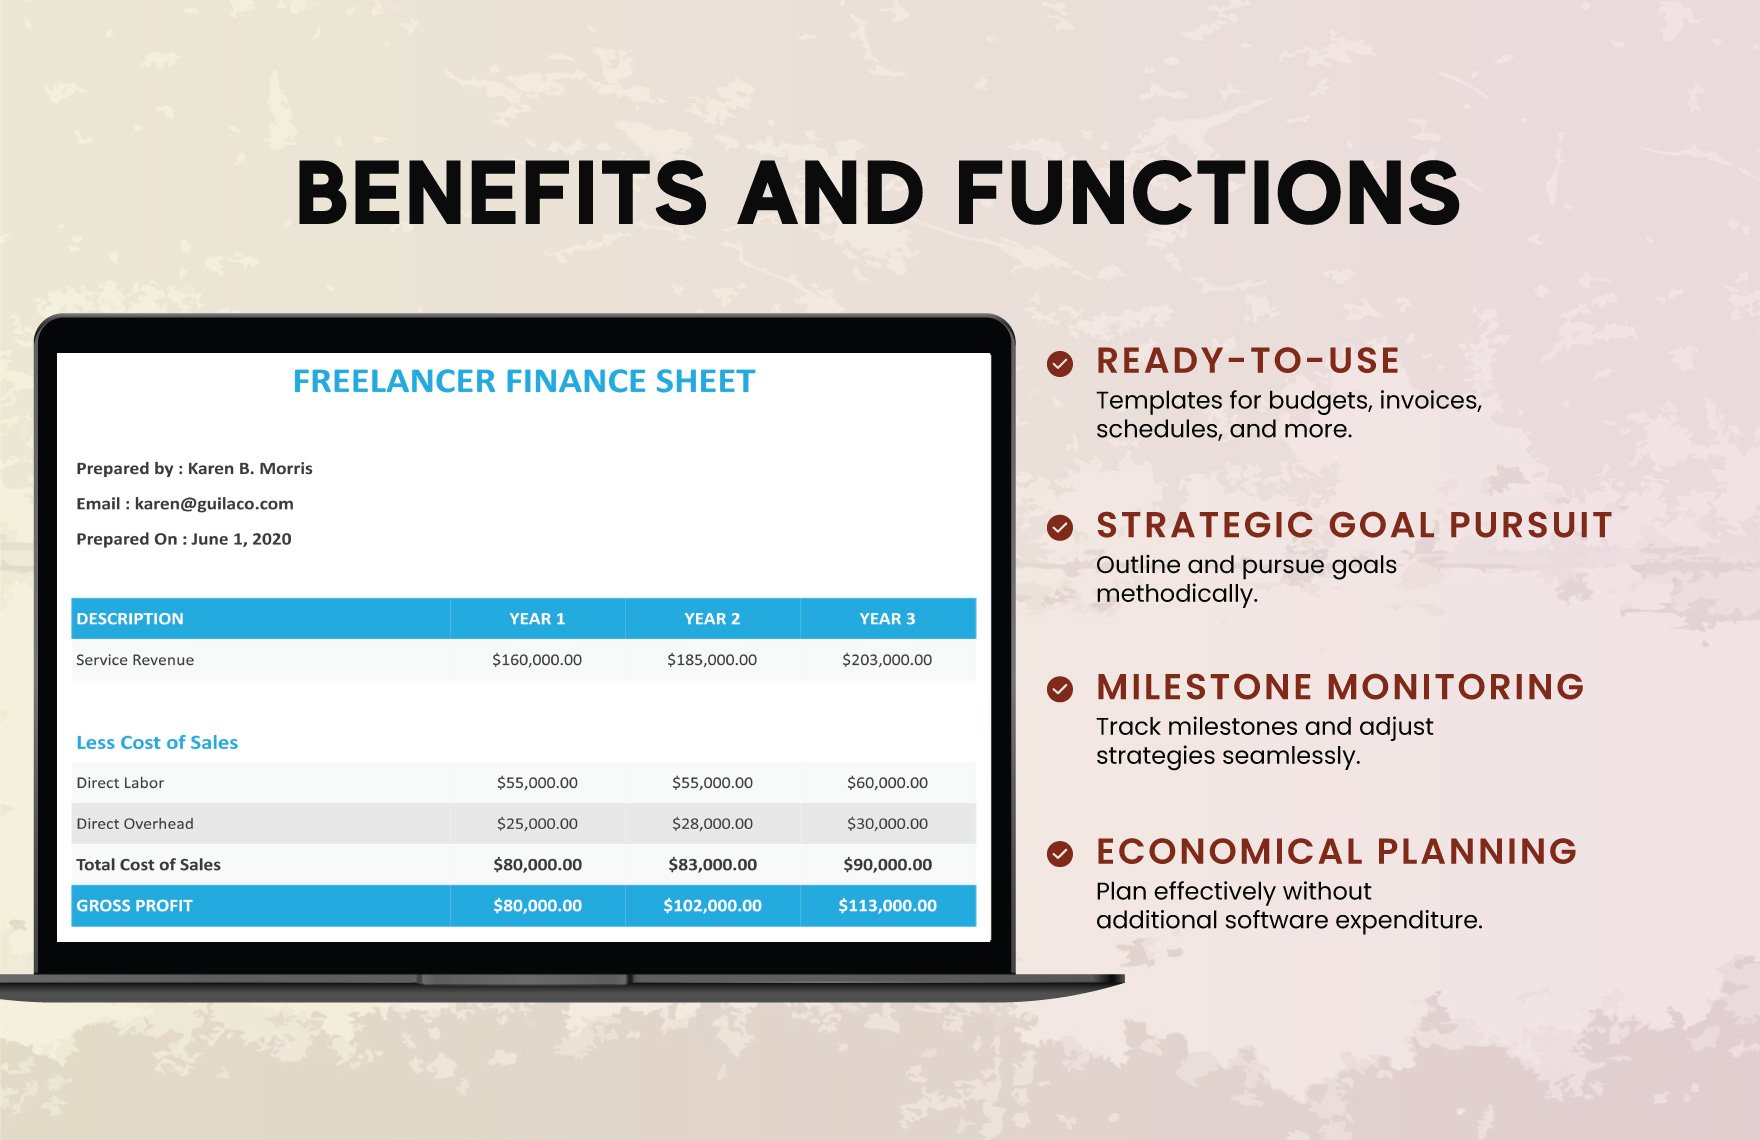 Freelancer Finance Sheet Template